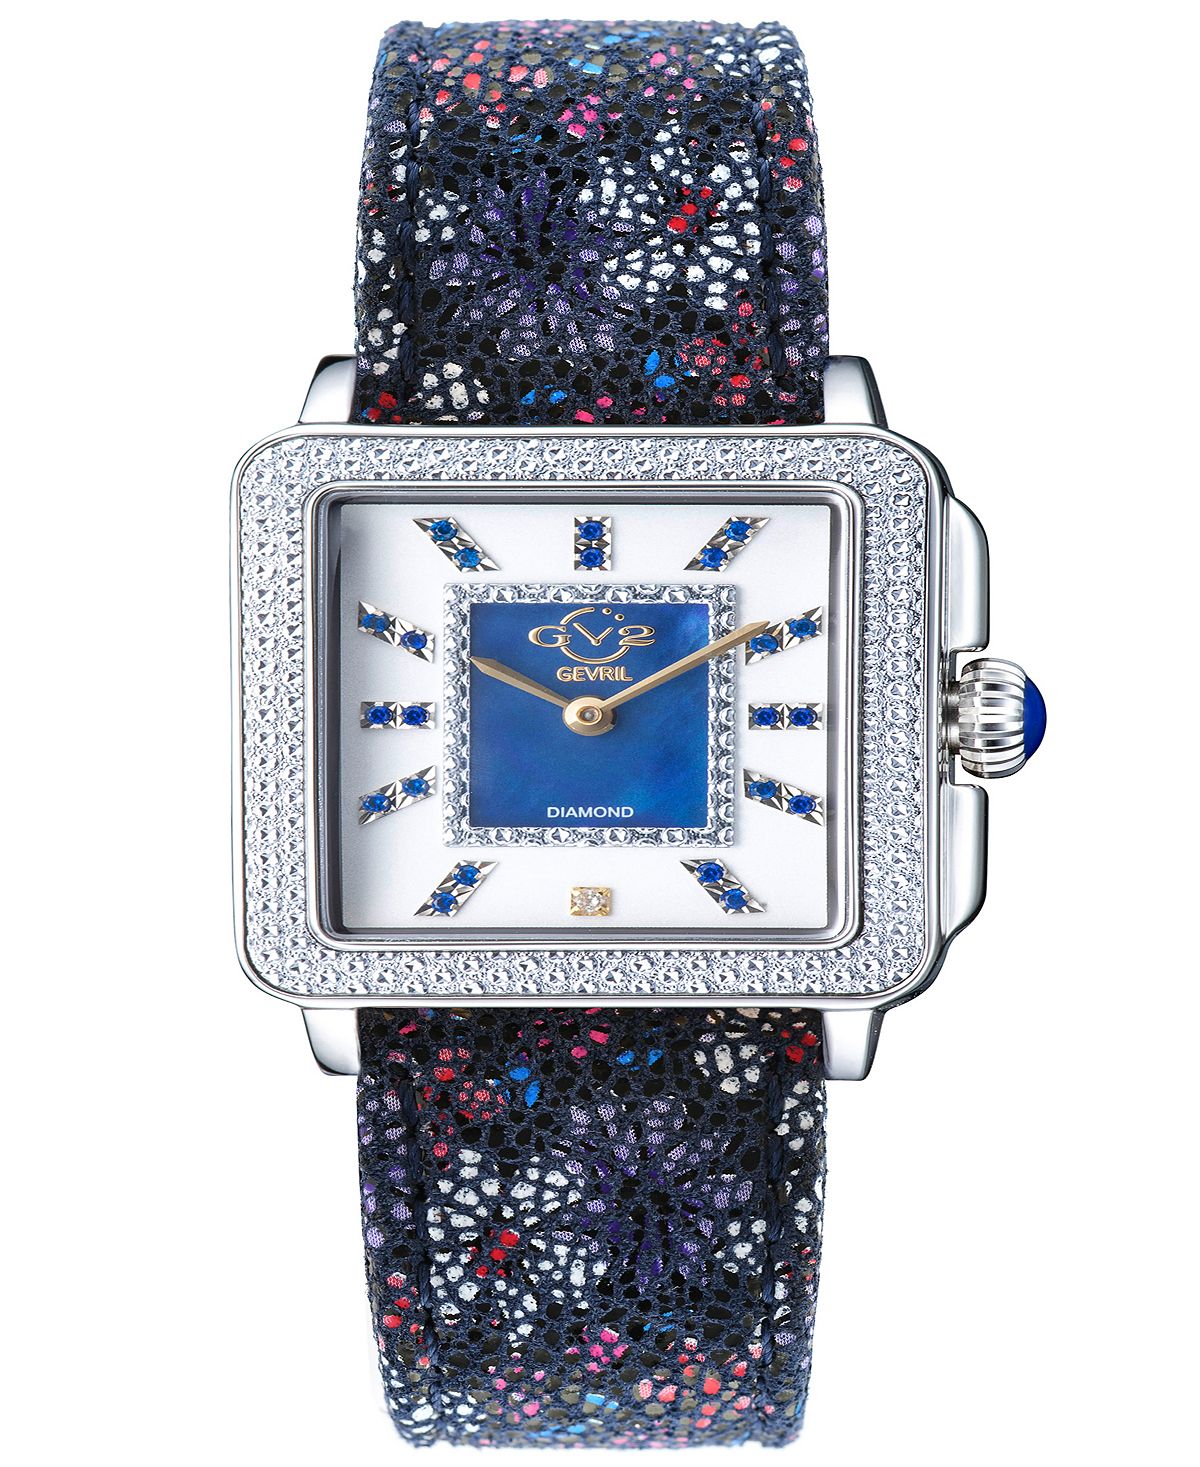 Женские часы Padova с драгоценными камнями и цветочным принтом, швейцарские кварцевые итальянские часы с синим кожаным ремешком, 30 мм Gevril